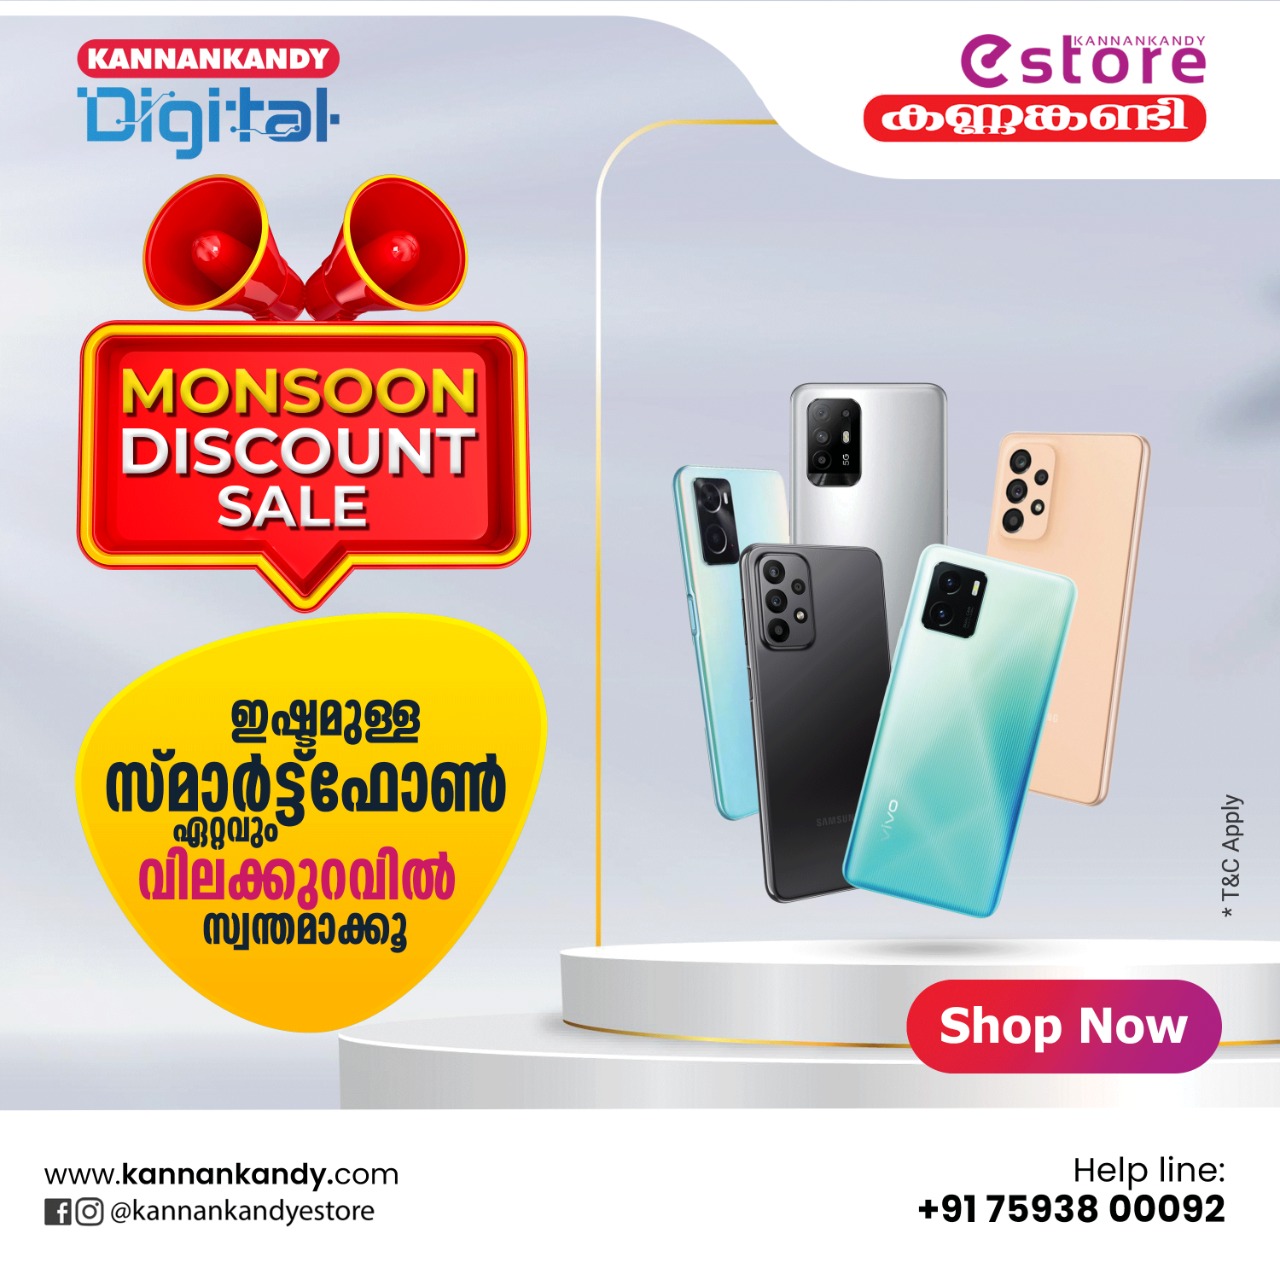 Kannankandy smart phones offer